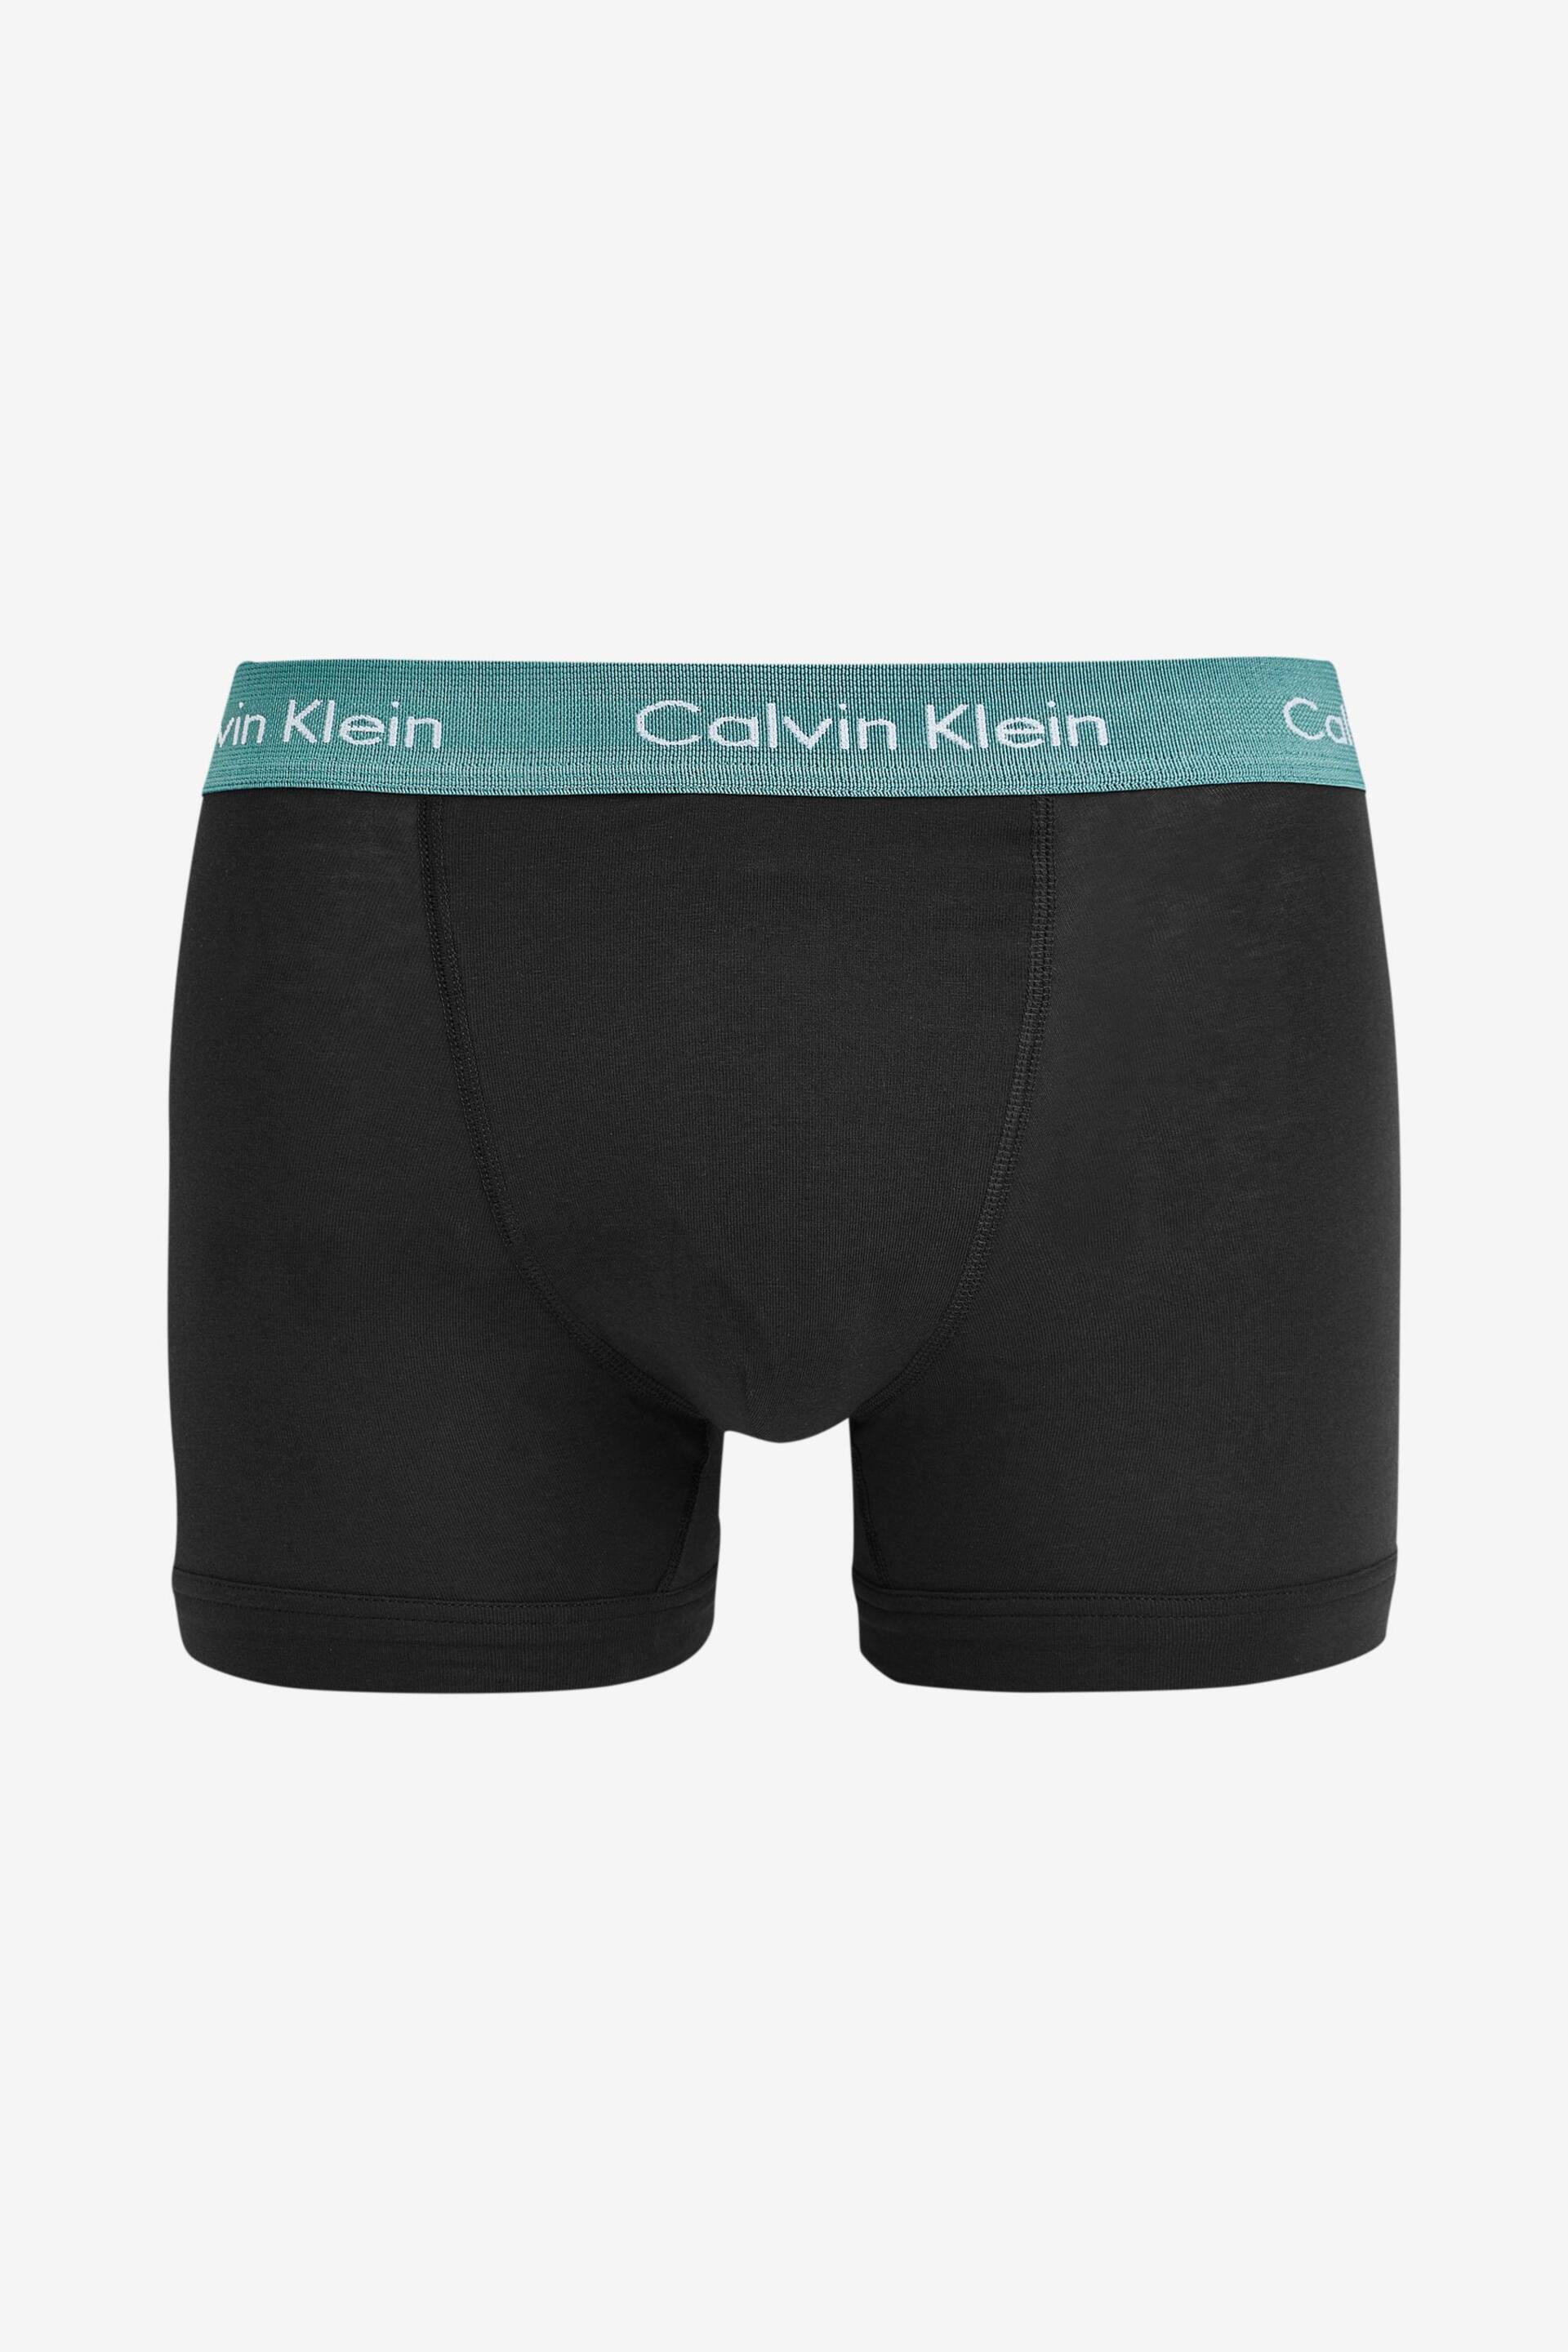 Calvin Klein Black Trunks 5 Pack - Image 4 of 4